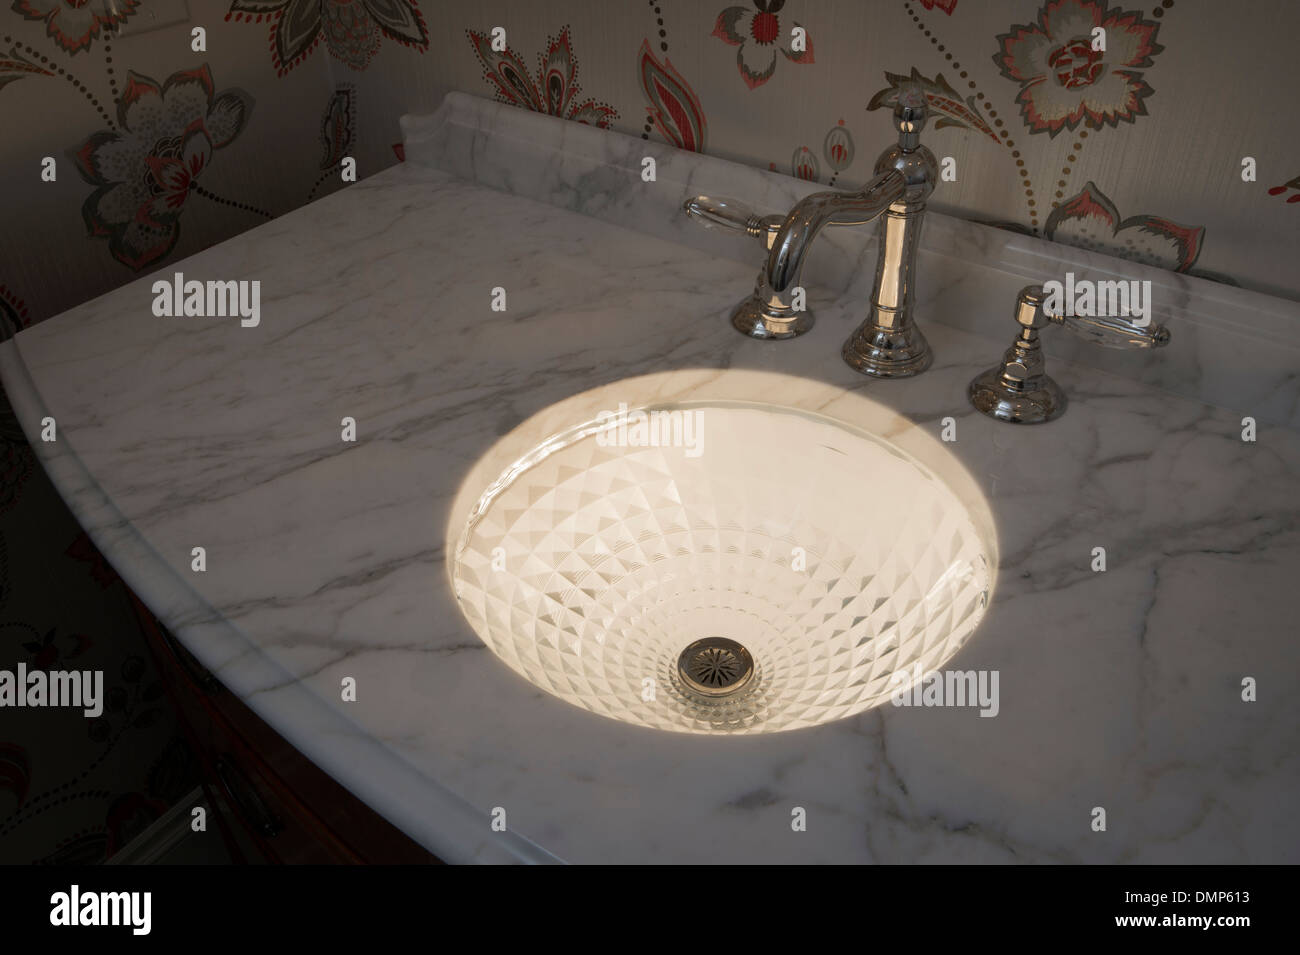 Cristallo illuminato il lavandino del bagno in marmo bianco Counter Foto Stock